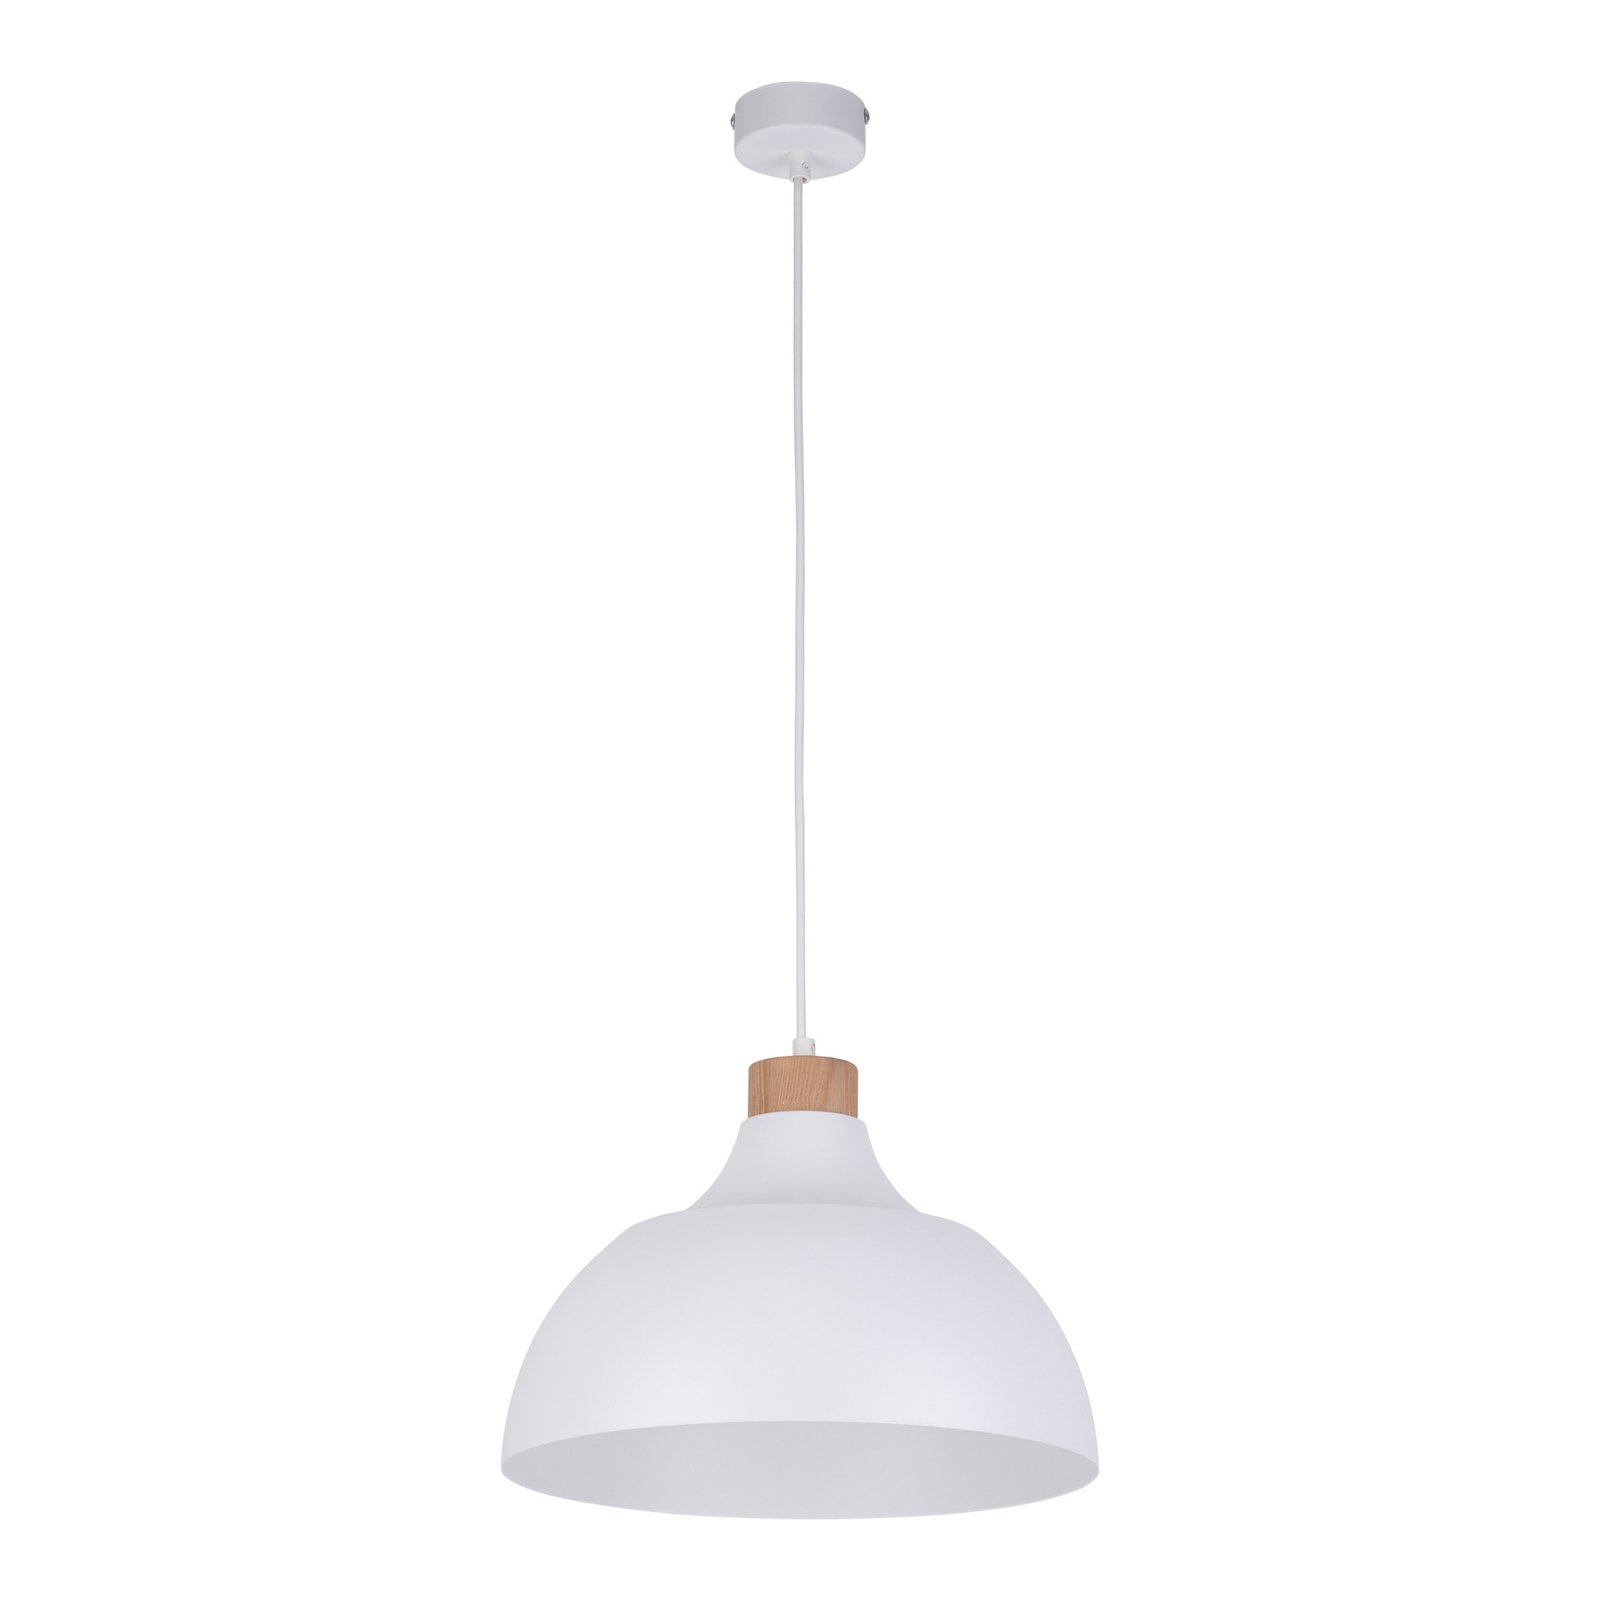 Envostar hanglamp Kaitt, houtdetail, Ø 34 cm, wit